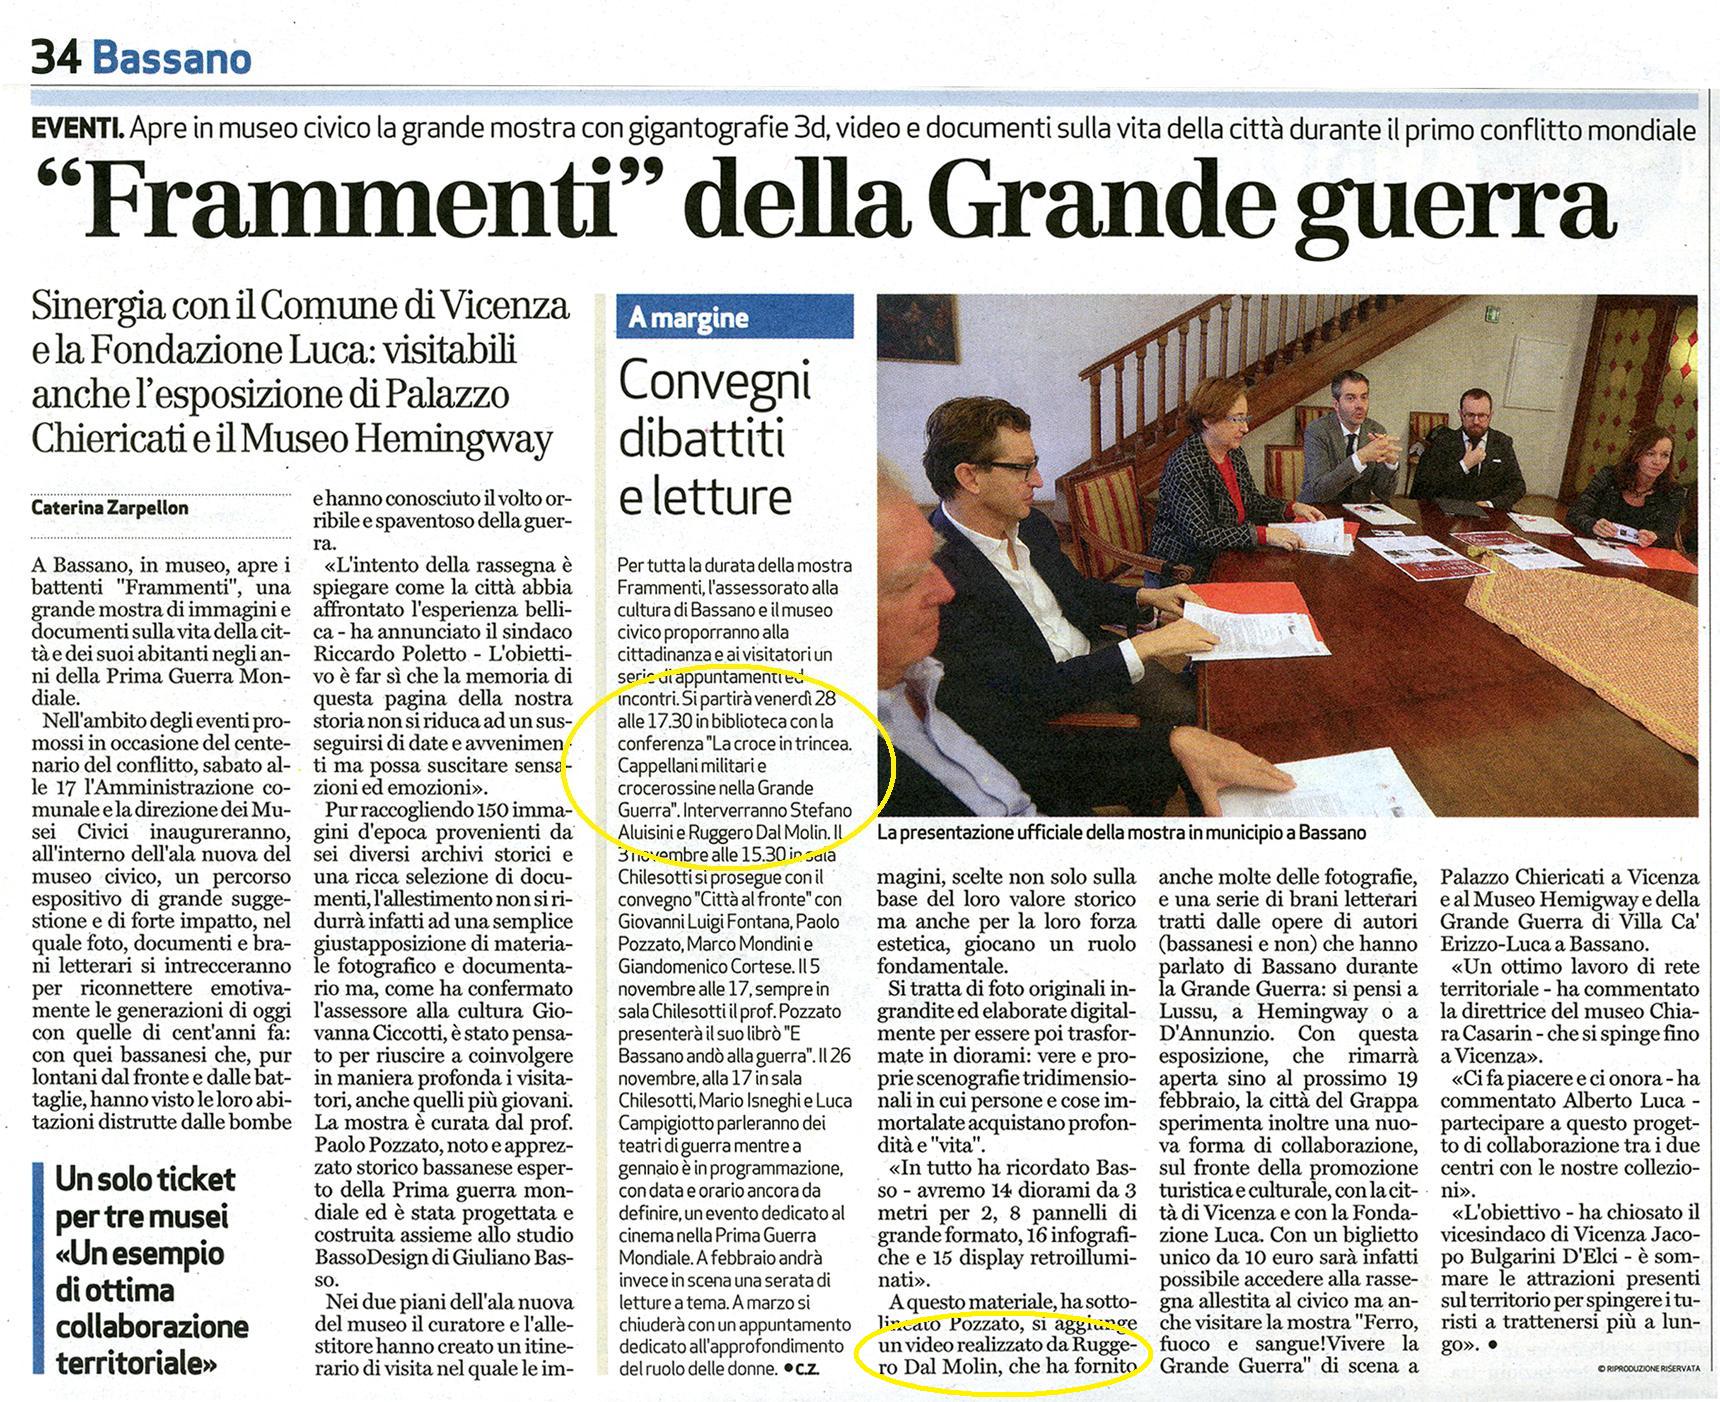 cronaca di Bassano del Giornale di Vicenza 25 10 2016.JPG